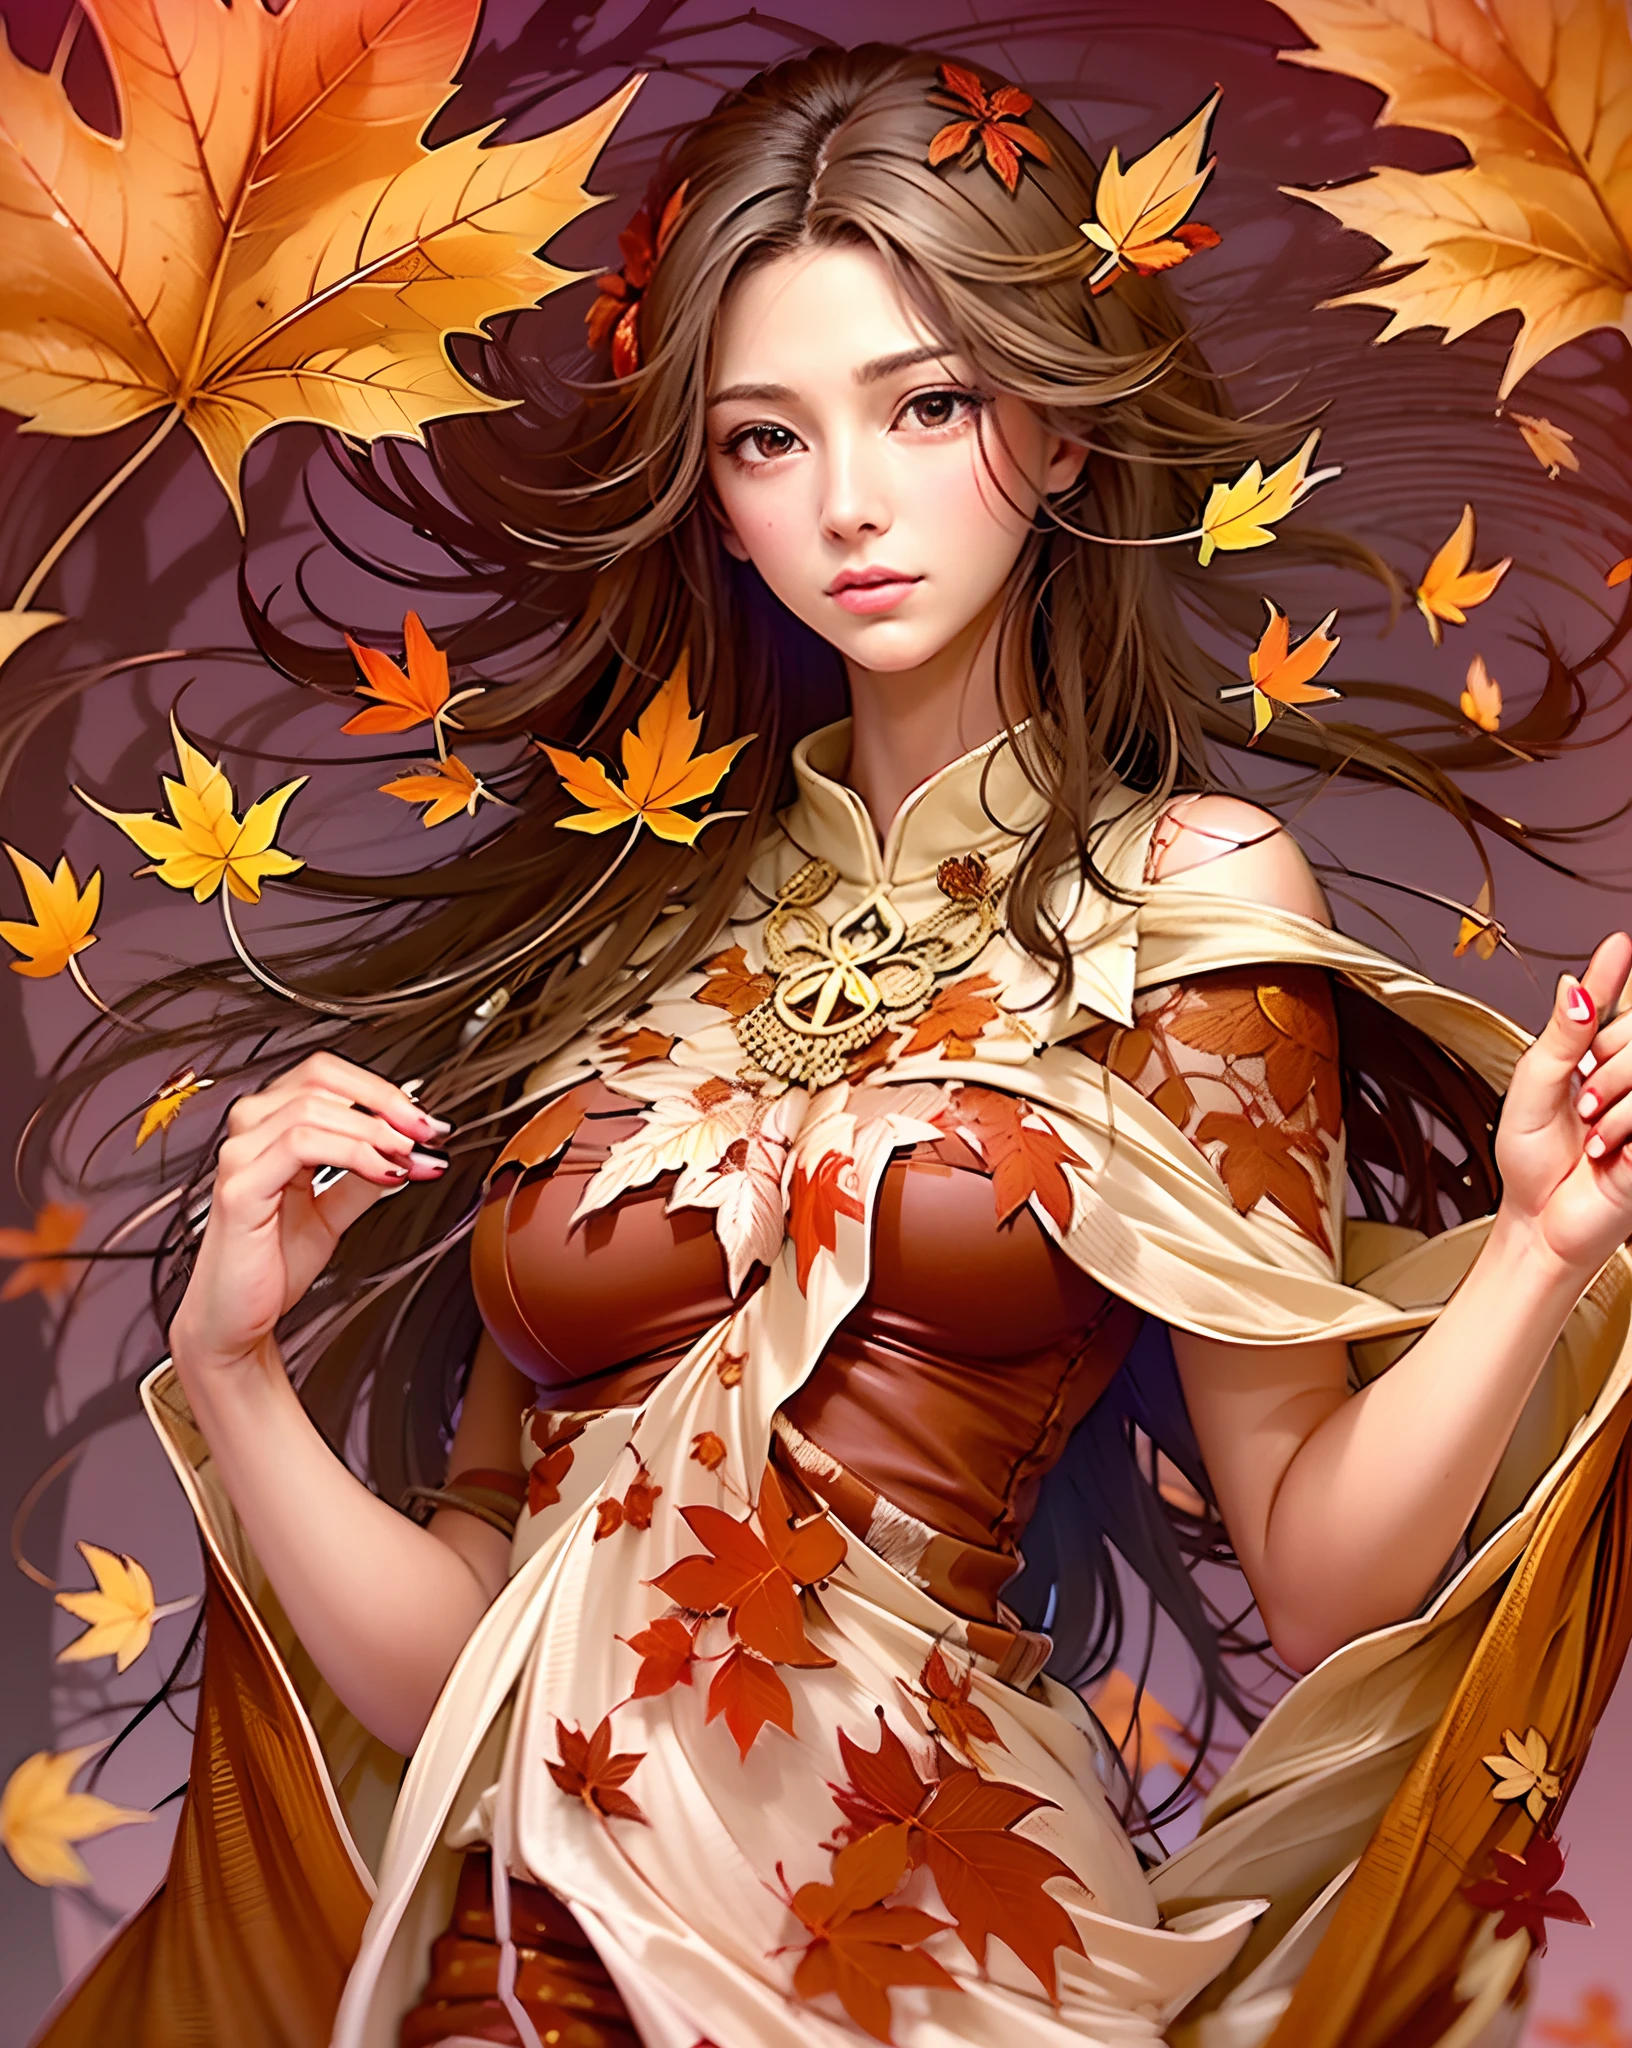 Die Göttin der Ahornblätter, ein strahlendes Wesen, geschmückt mit purpurroten Ahornblättern, die wie ein königlicher Mantel um sie herumflattern. Ihre Anwesenheit ist ein Symbol der Schönheit des Herbstes und der sanften Kraft der Natur. beste Qualität, komplizierte Details, Klare Linien, auffällige Komposition, sanfte Töne, Anime-Realismus, großzügige Kopffreiheit, dynamische pose, Dritte Regeln der Fotografie, perfekte Illustration